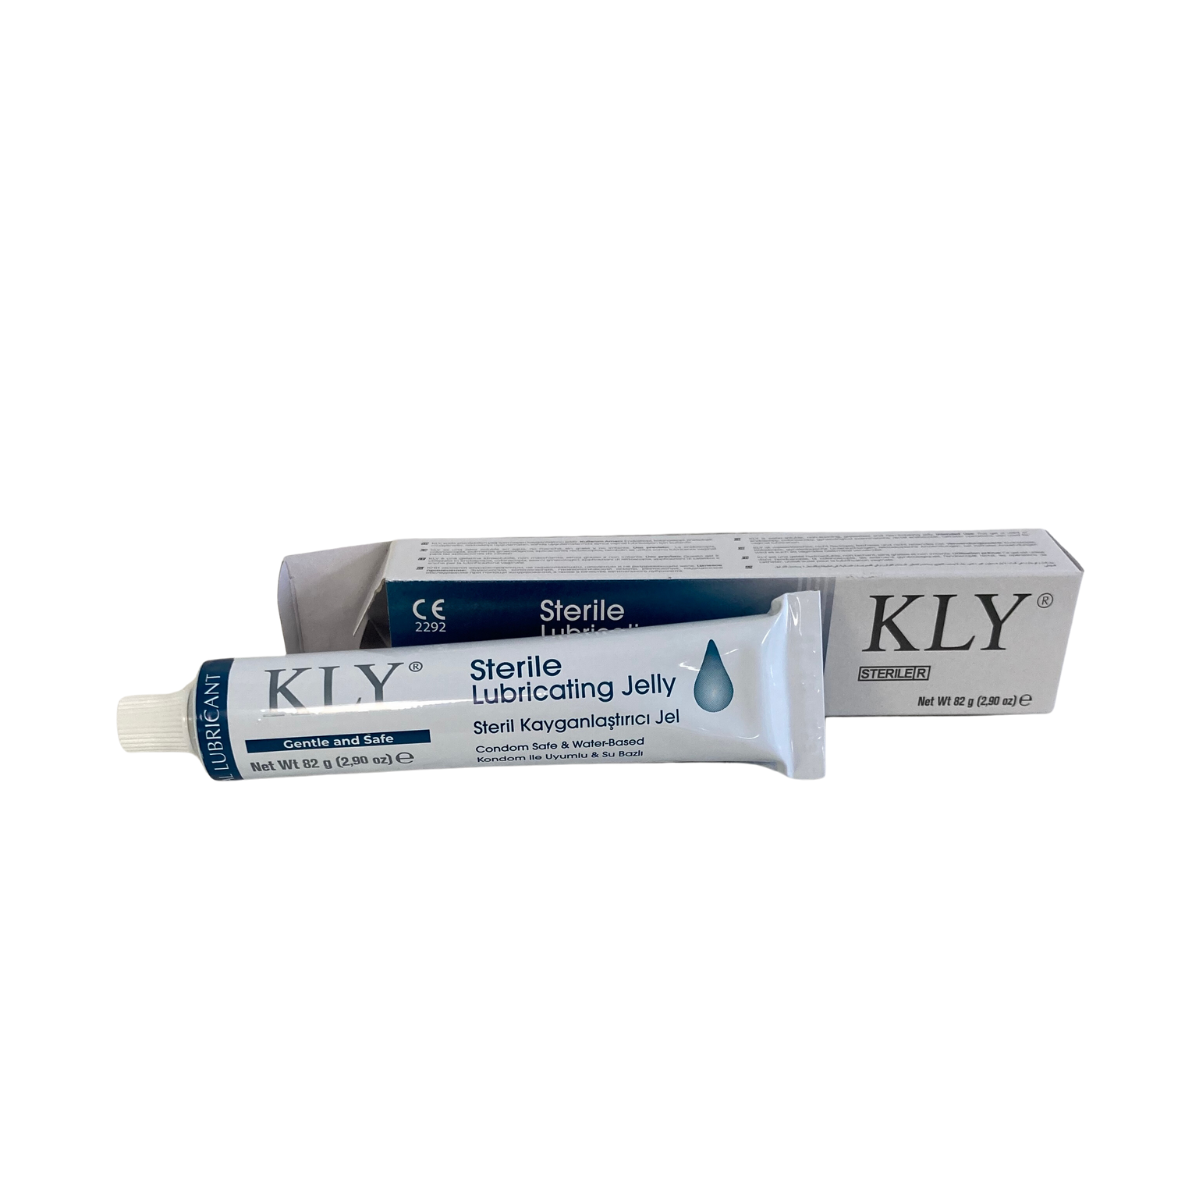 gel lubrifiant intime KLY sterile à base deau, sans parfum et sans alcool. PH neutre.  Ce gel lubrifiant sutilise pour faciliter linsertion ou pendant les rapports sexuels tablelya